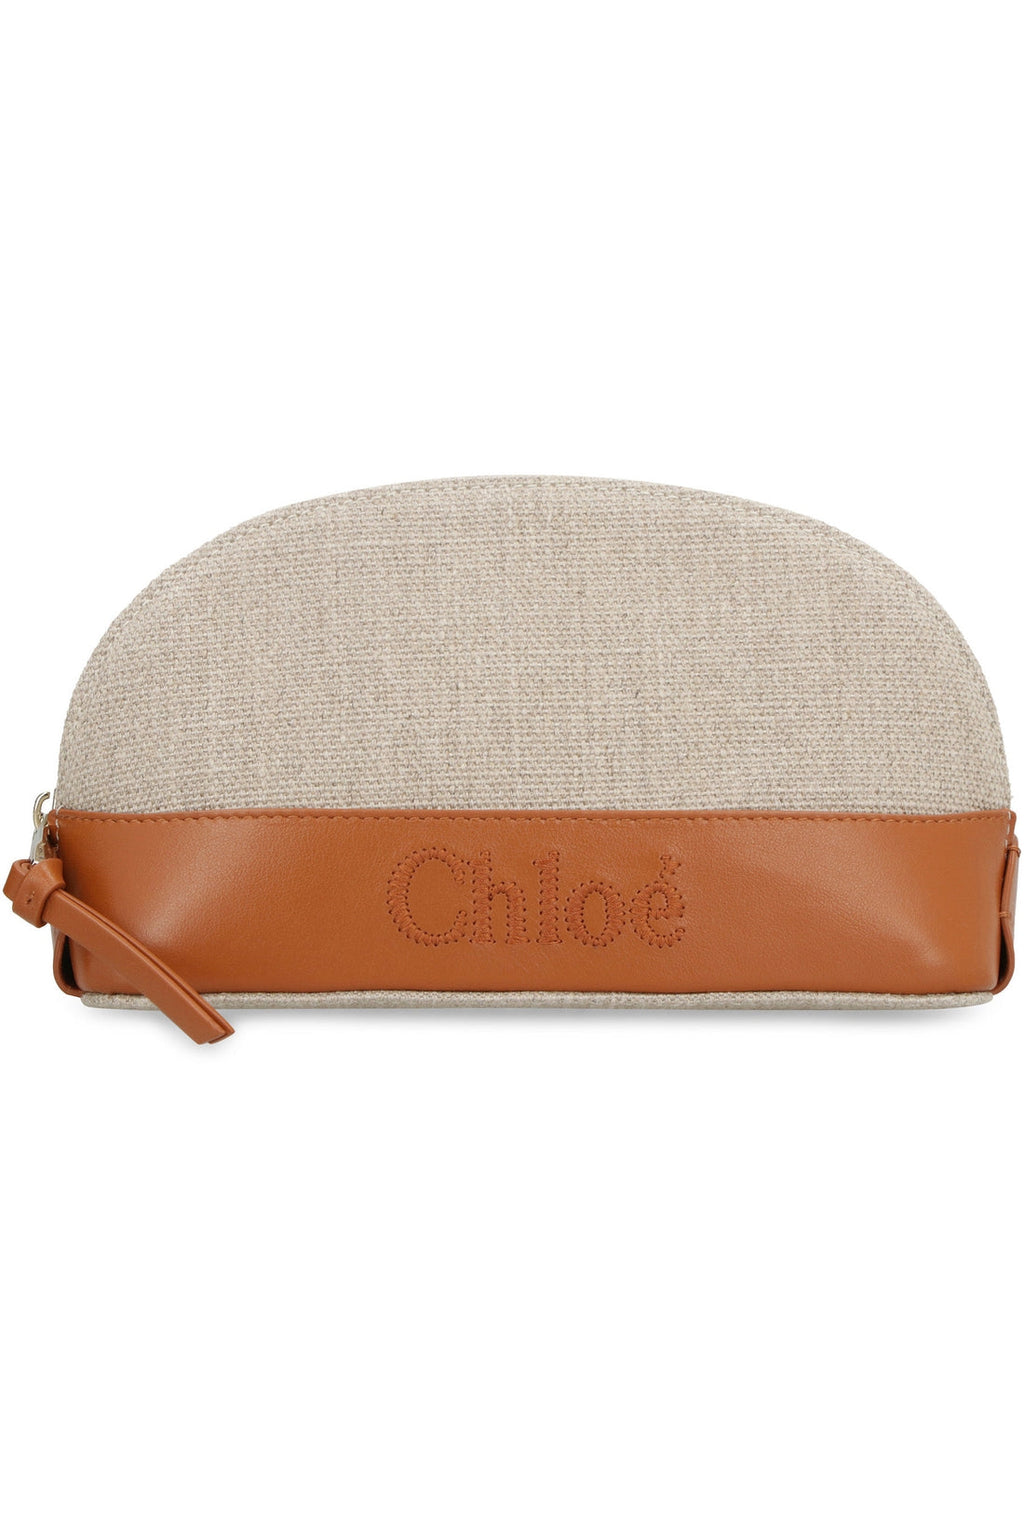 Chloé-OUTLET-SALE-Chloé Sense wash bag-ARCHIVIST